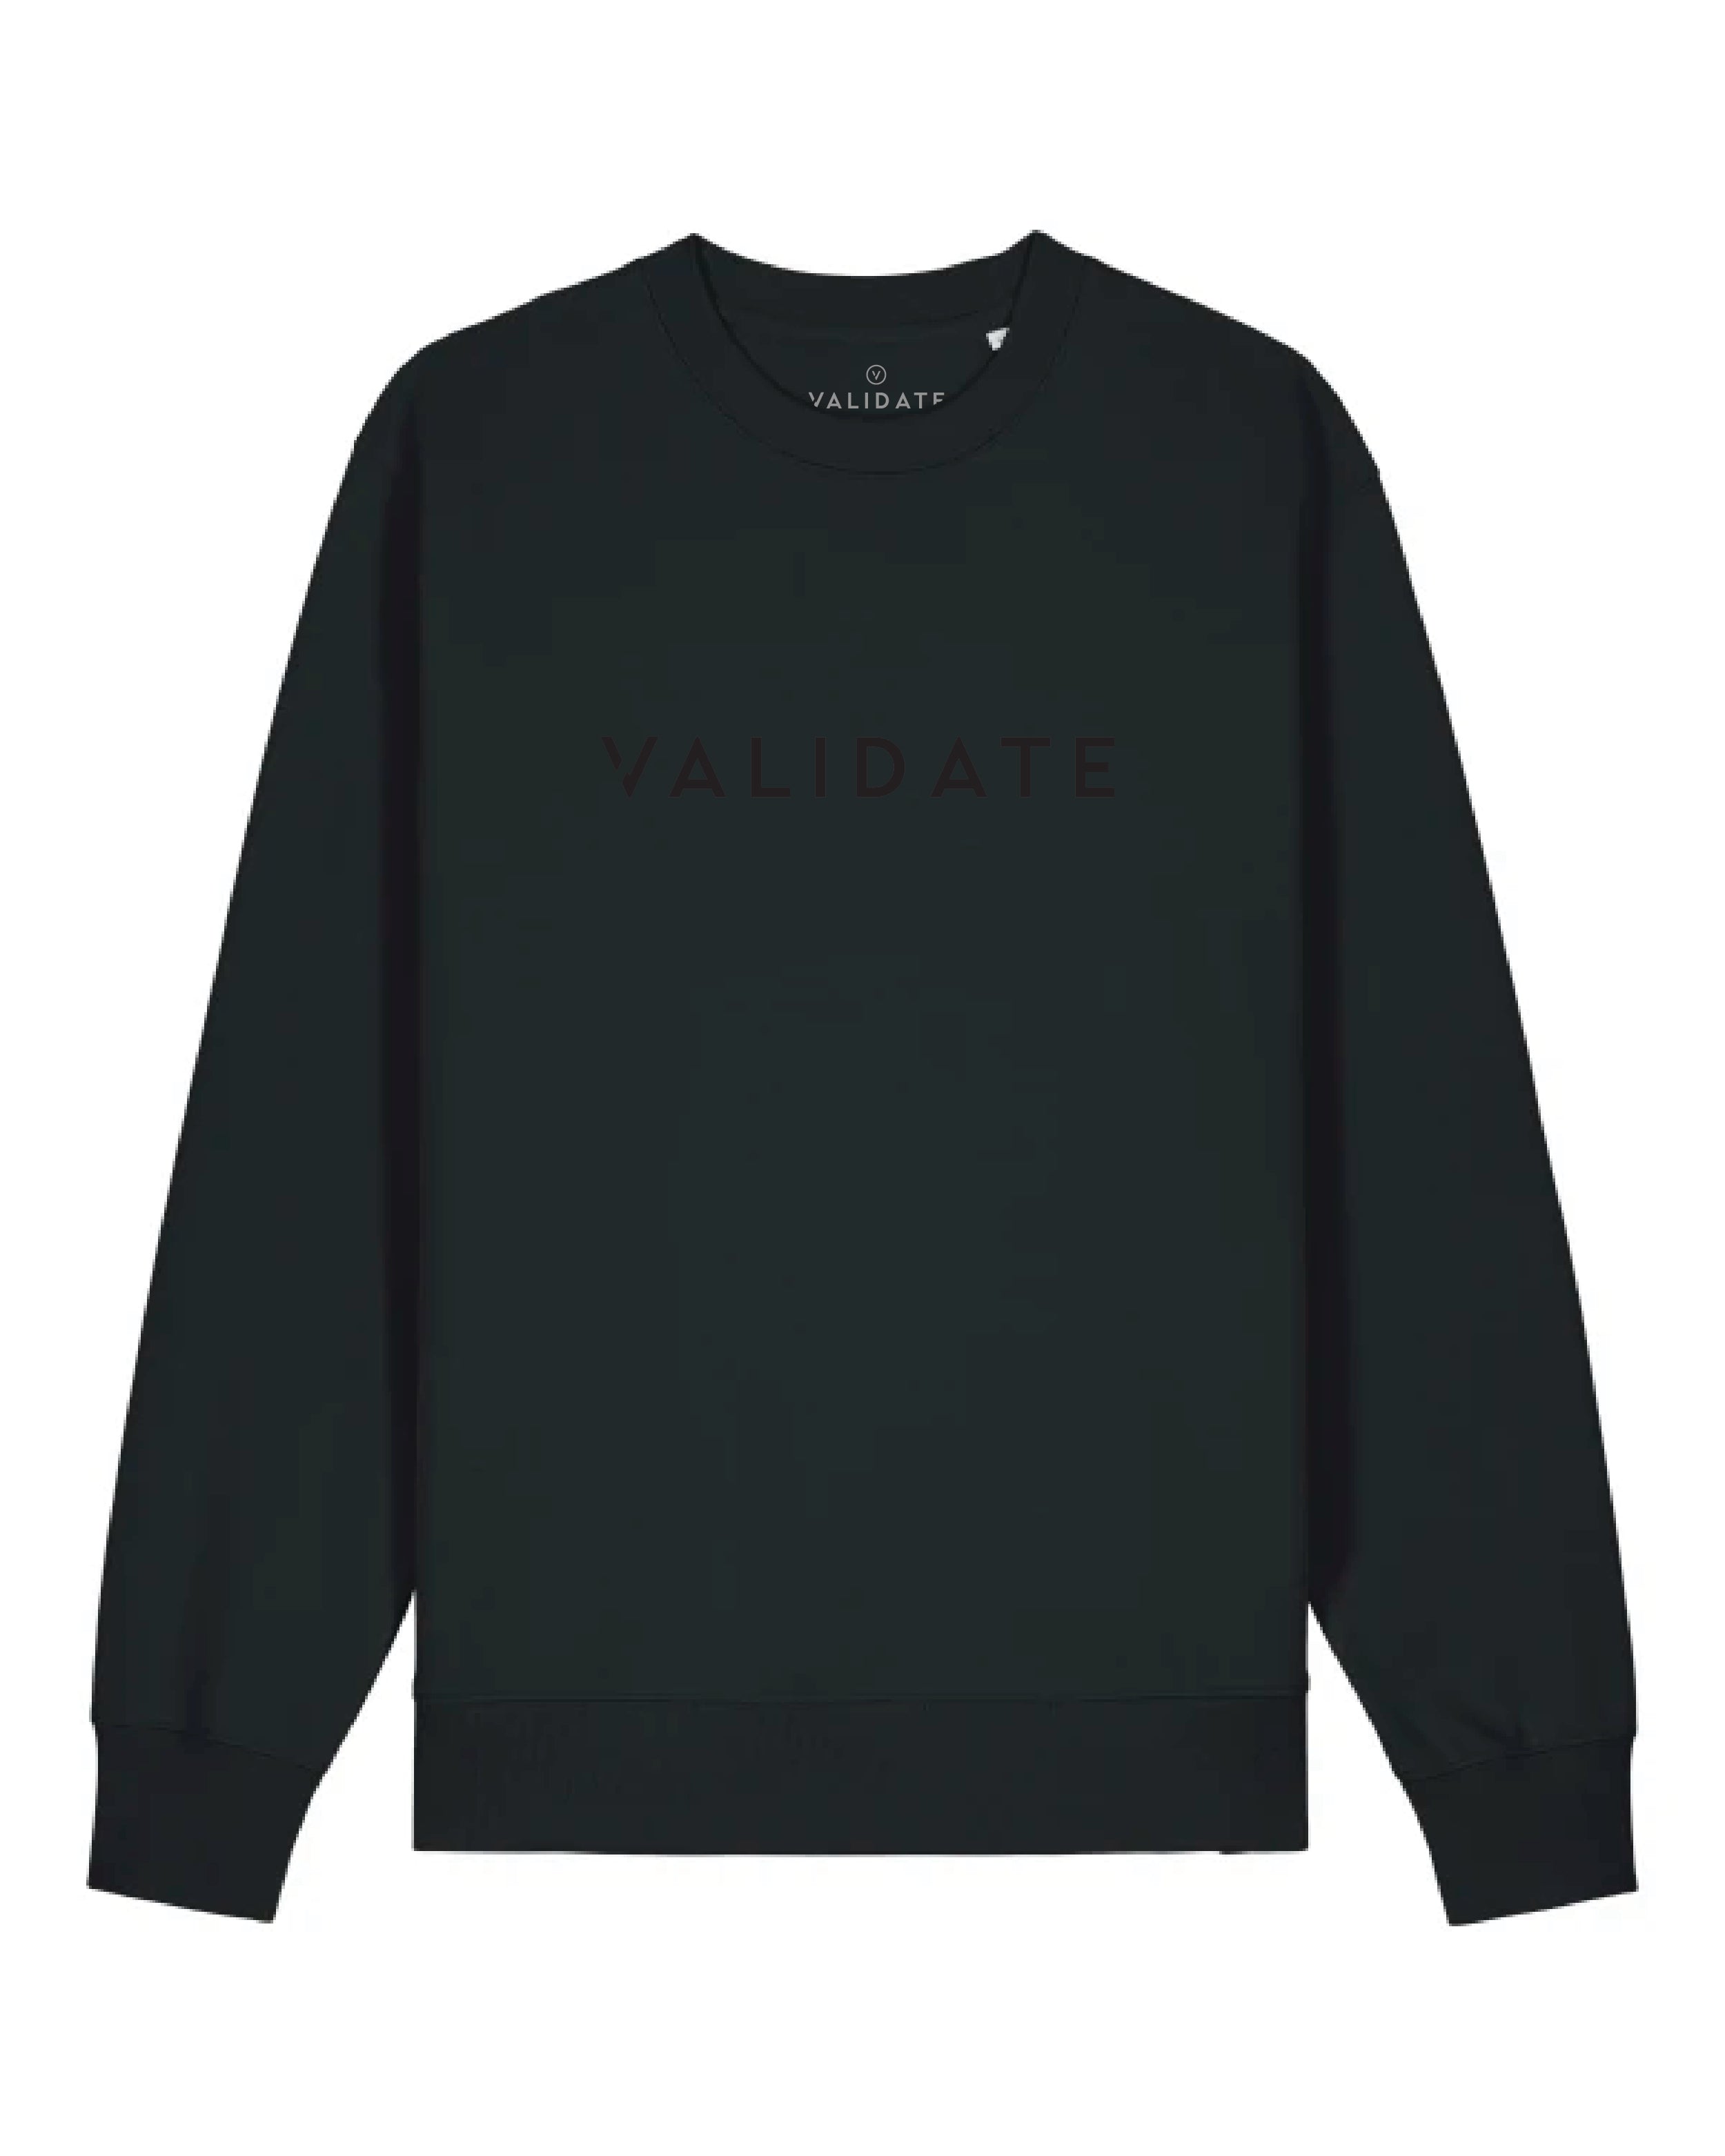 Validate Pioneer Sweatshirt Black